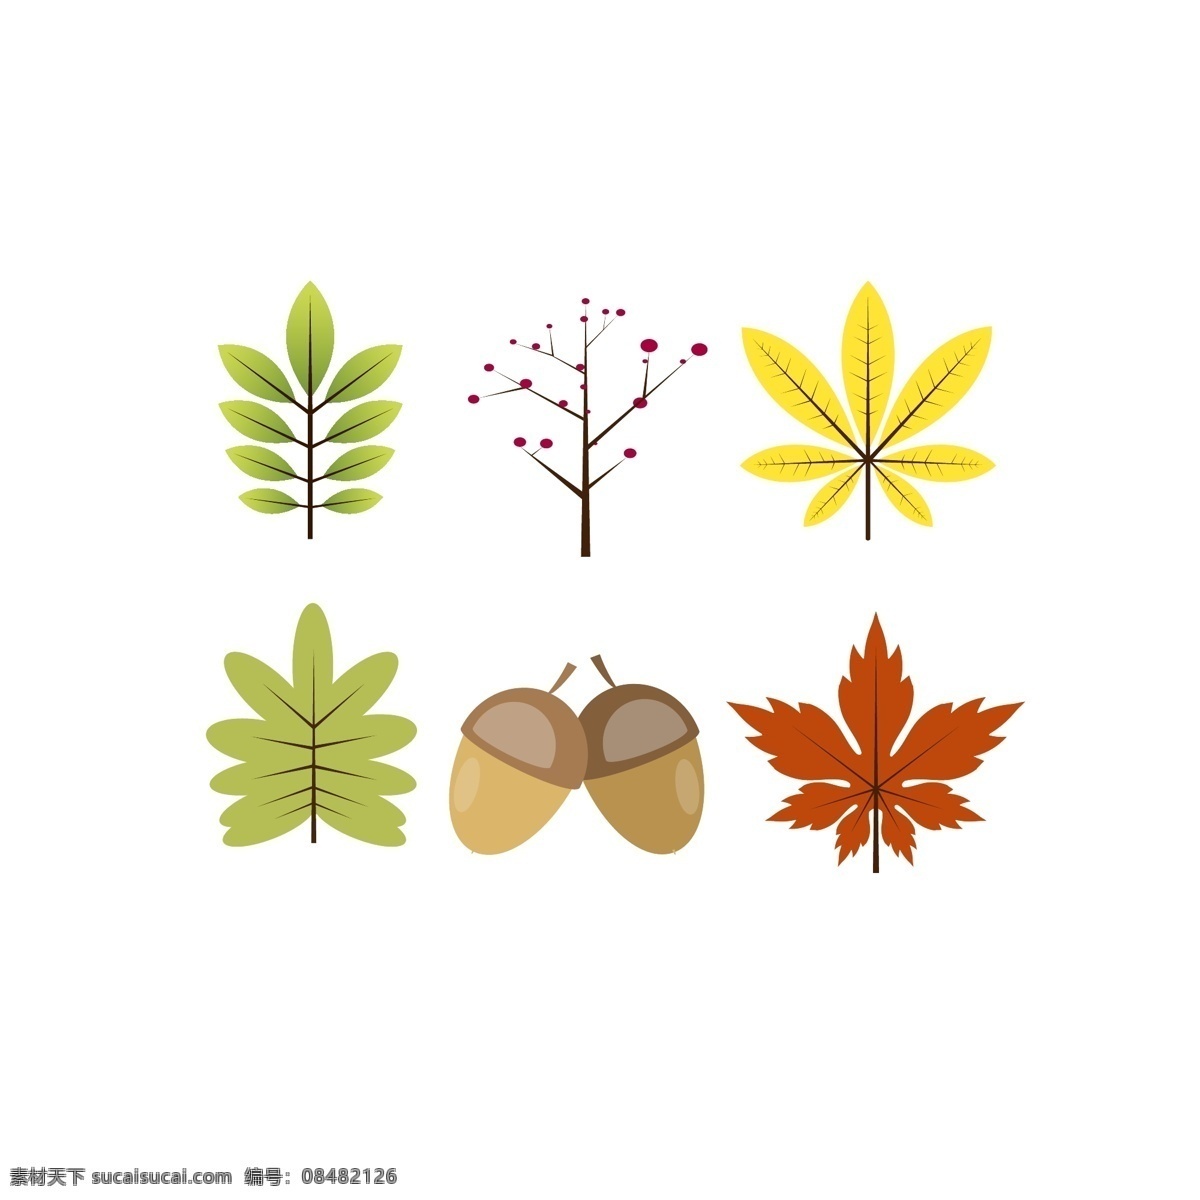 秋天 相关 元素 小 图标 矢量图 秋季 树叶 枫叶 栗子 板栗 黄色 秋 小图标 矢量 扁平化 叶子